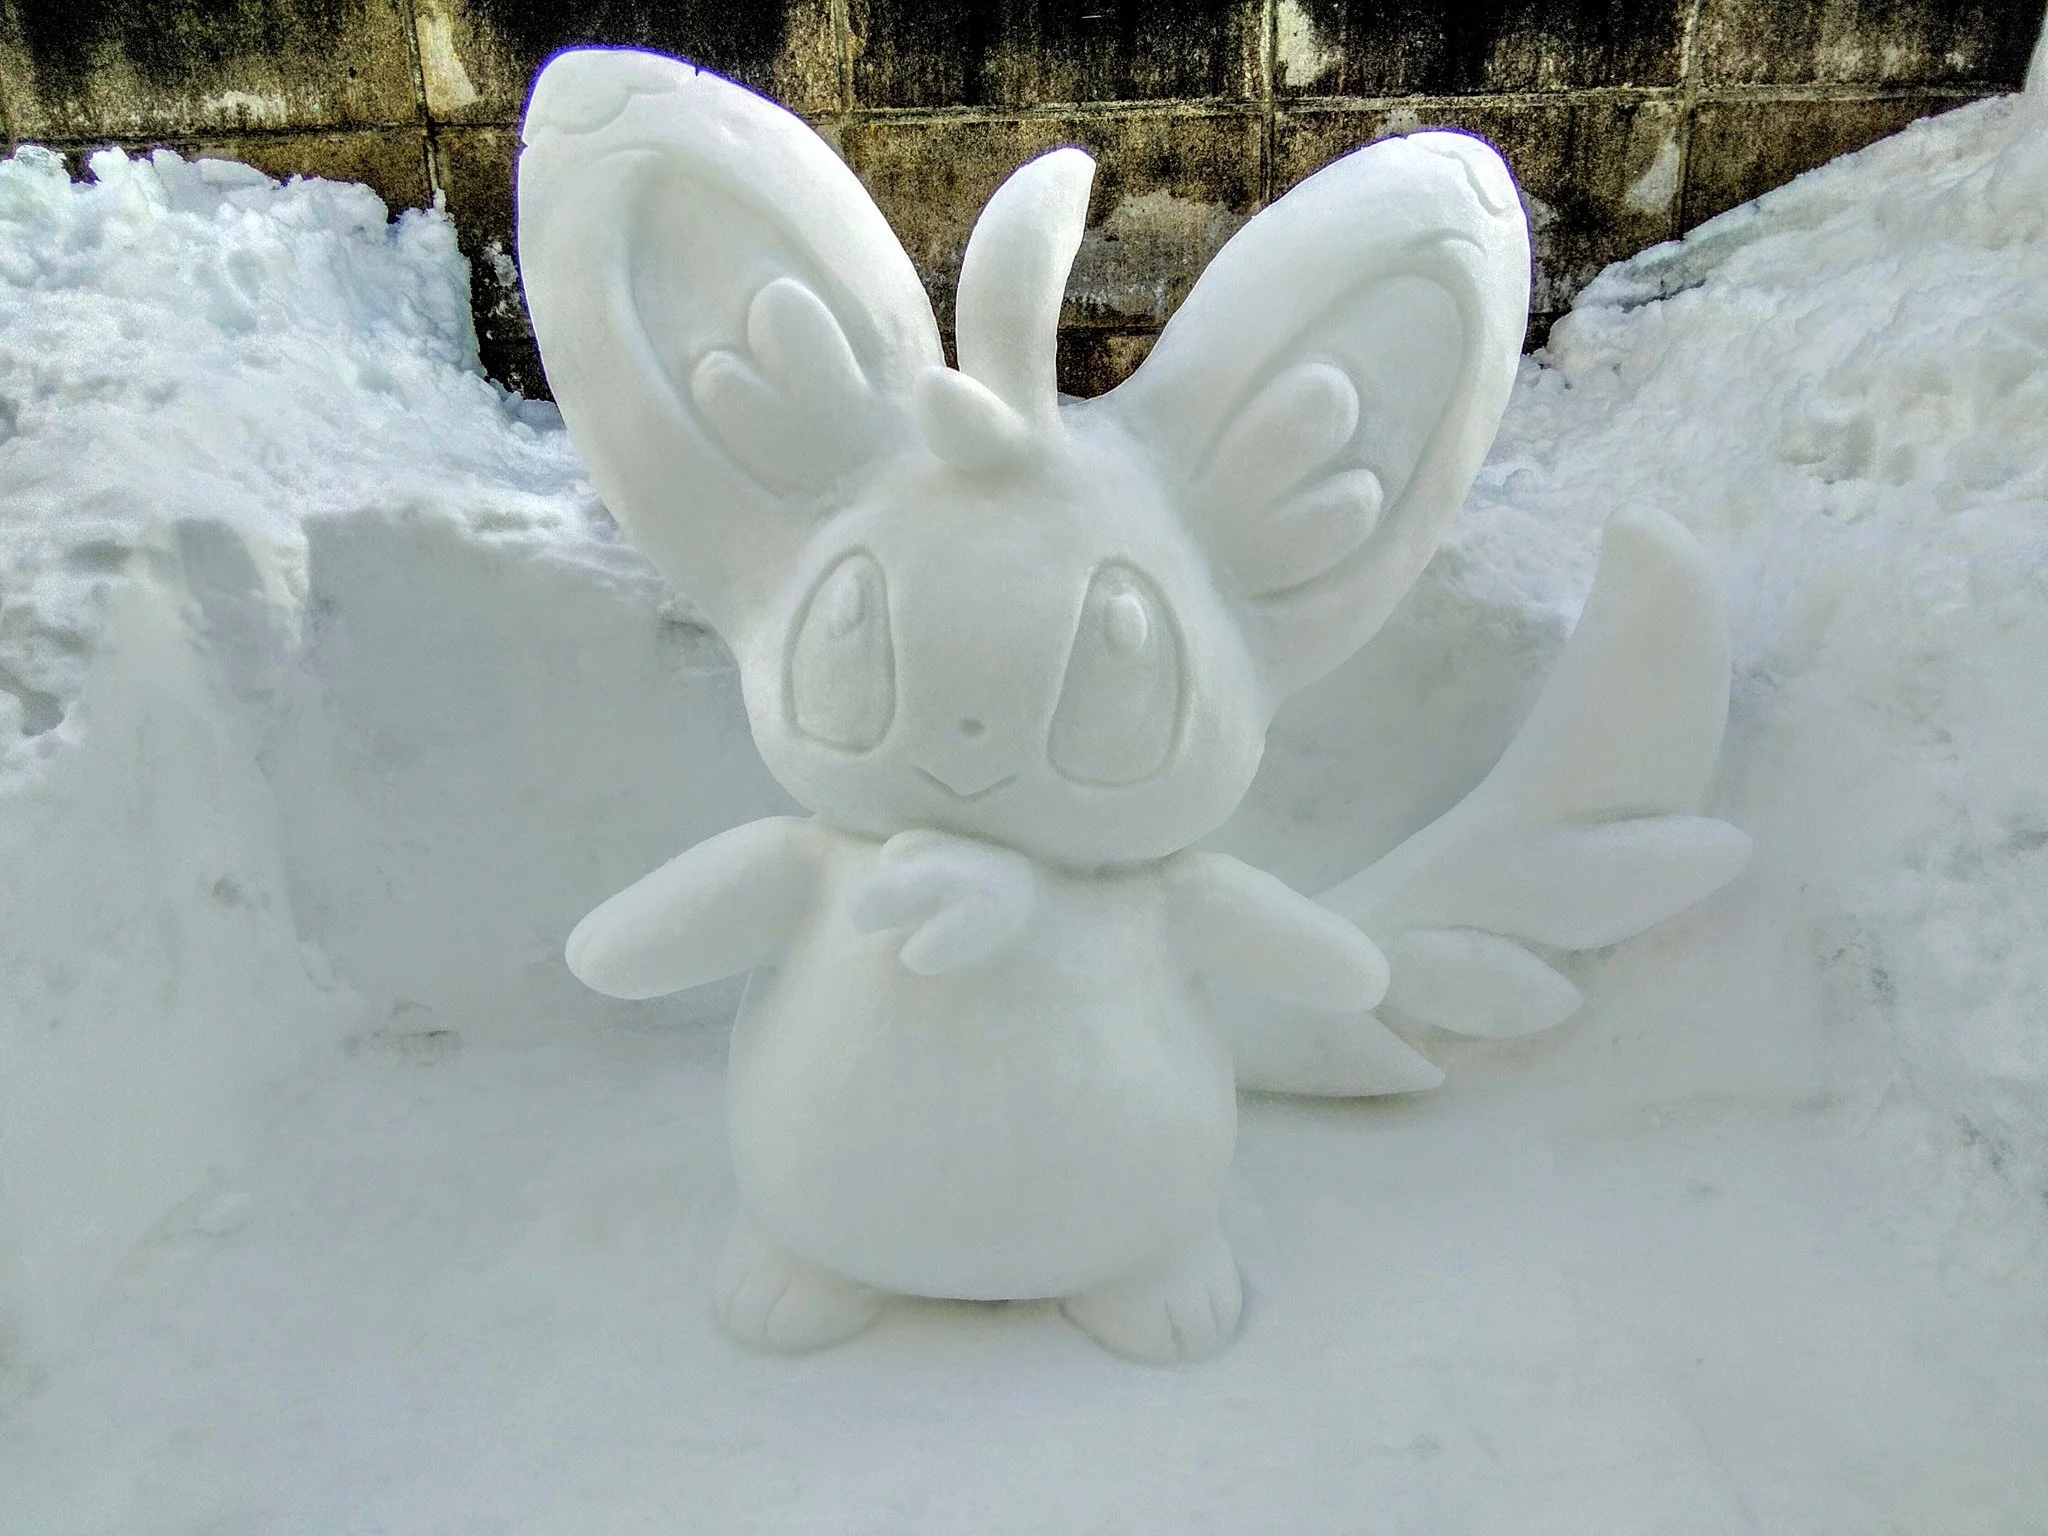 Японский художник делает скульптуры из снега. Есть Годзилла и R2-D2 - фото 5